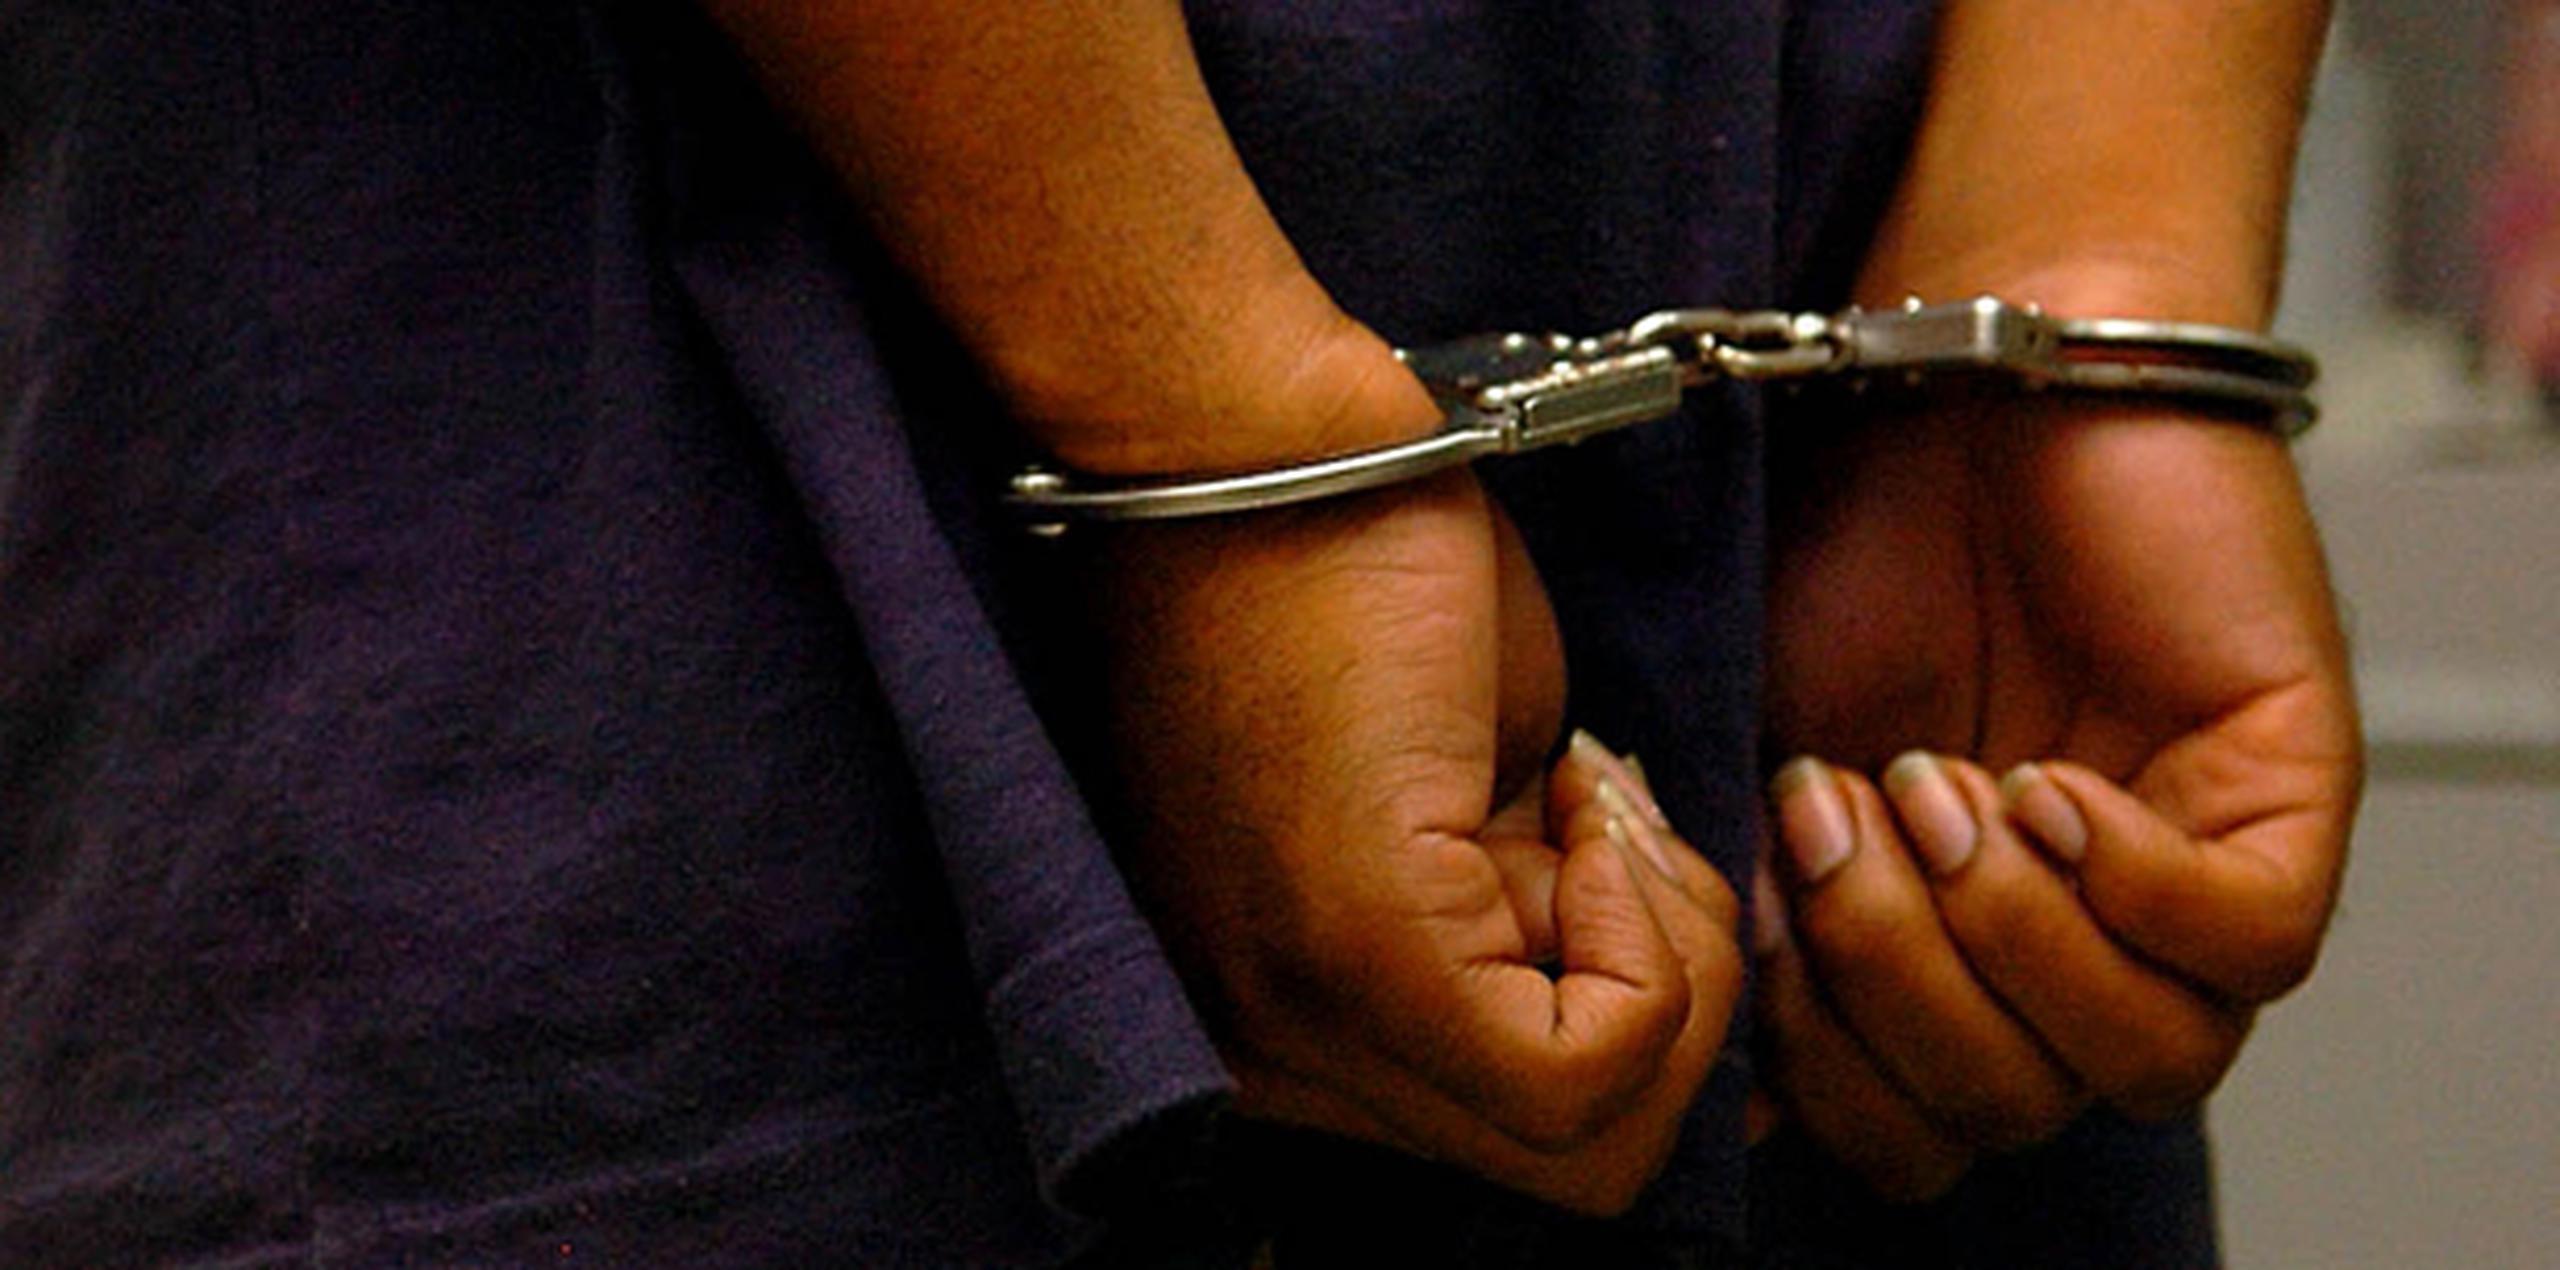 Los arrestados se encuentran bajo custodia en el Cuartel de Drogas en San Juan, en espera de la posible radicación de cargos. (Archivo)